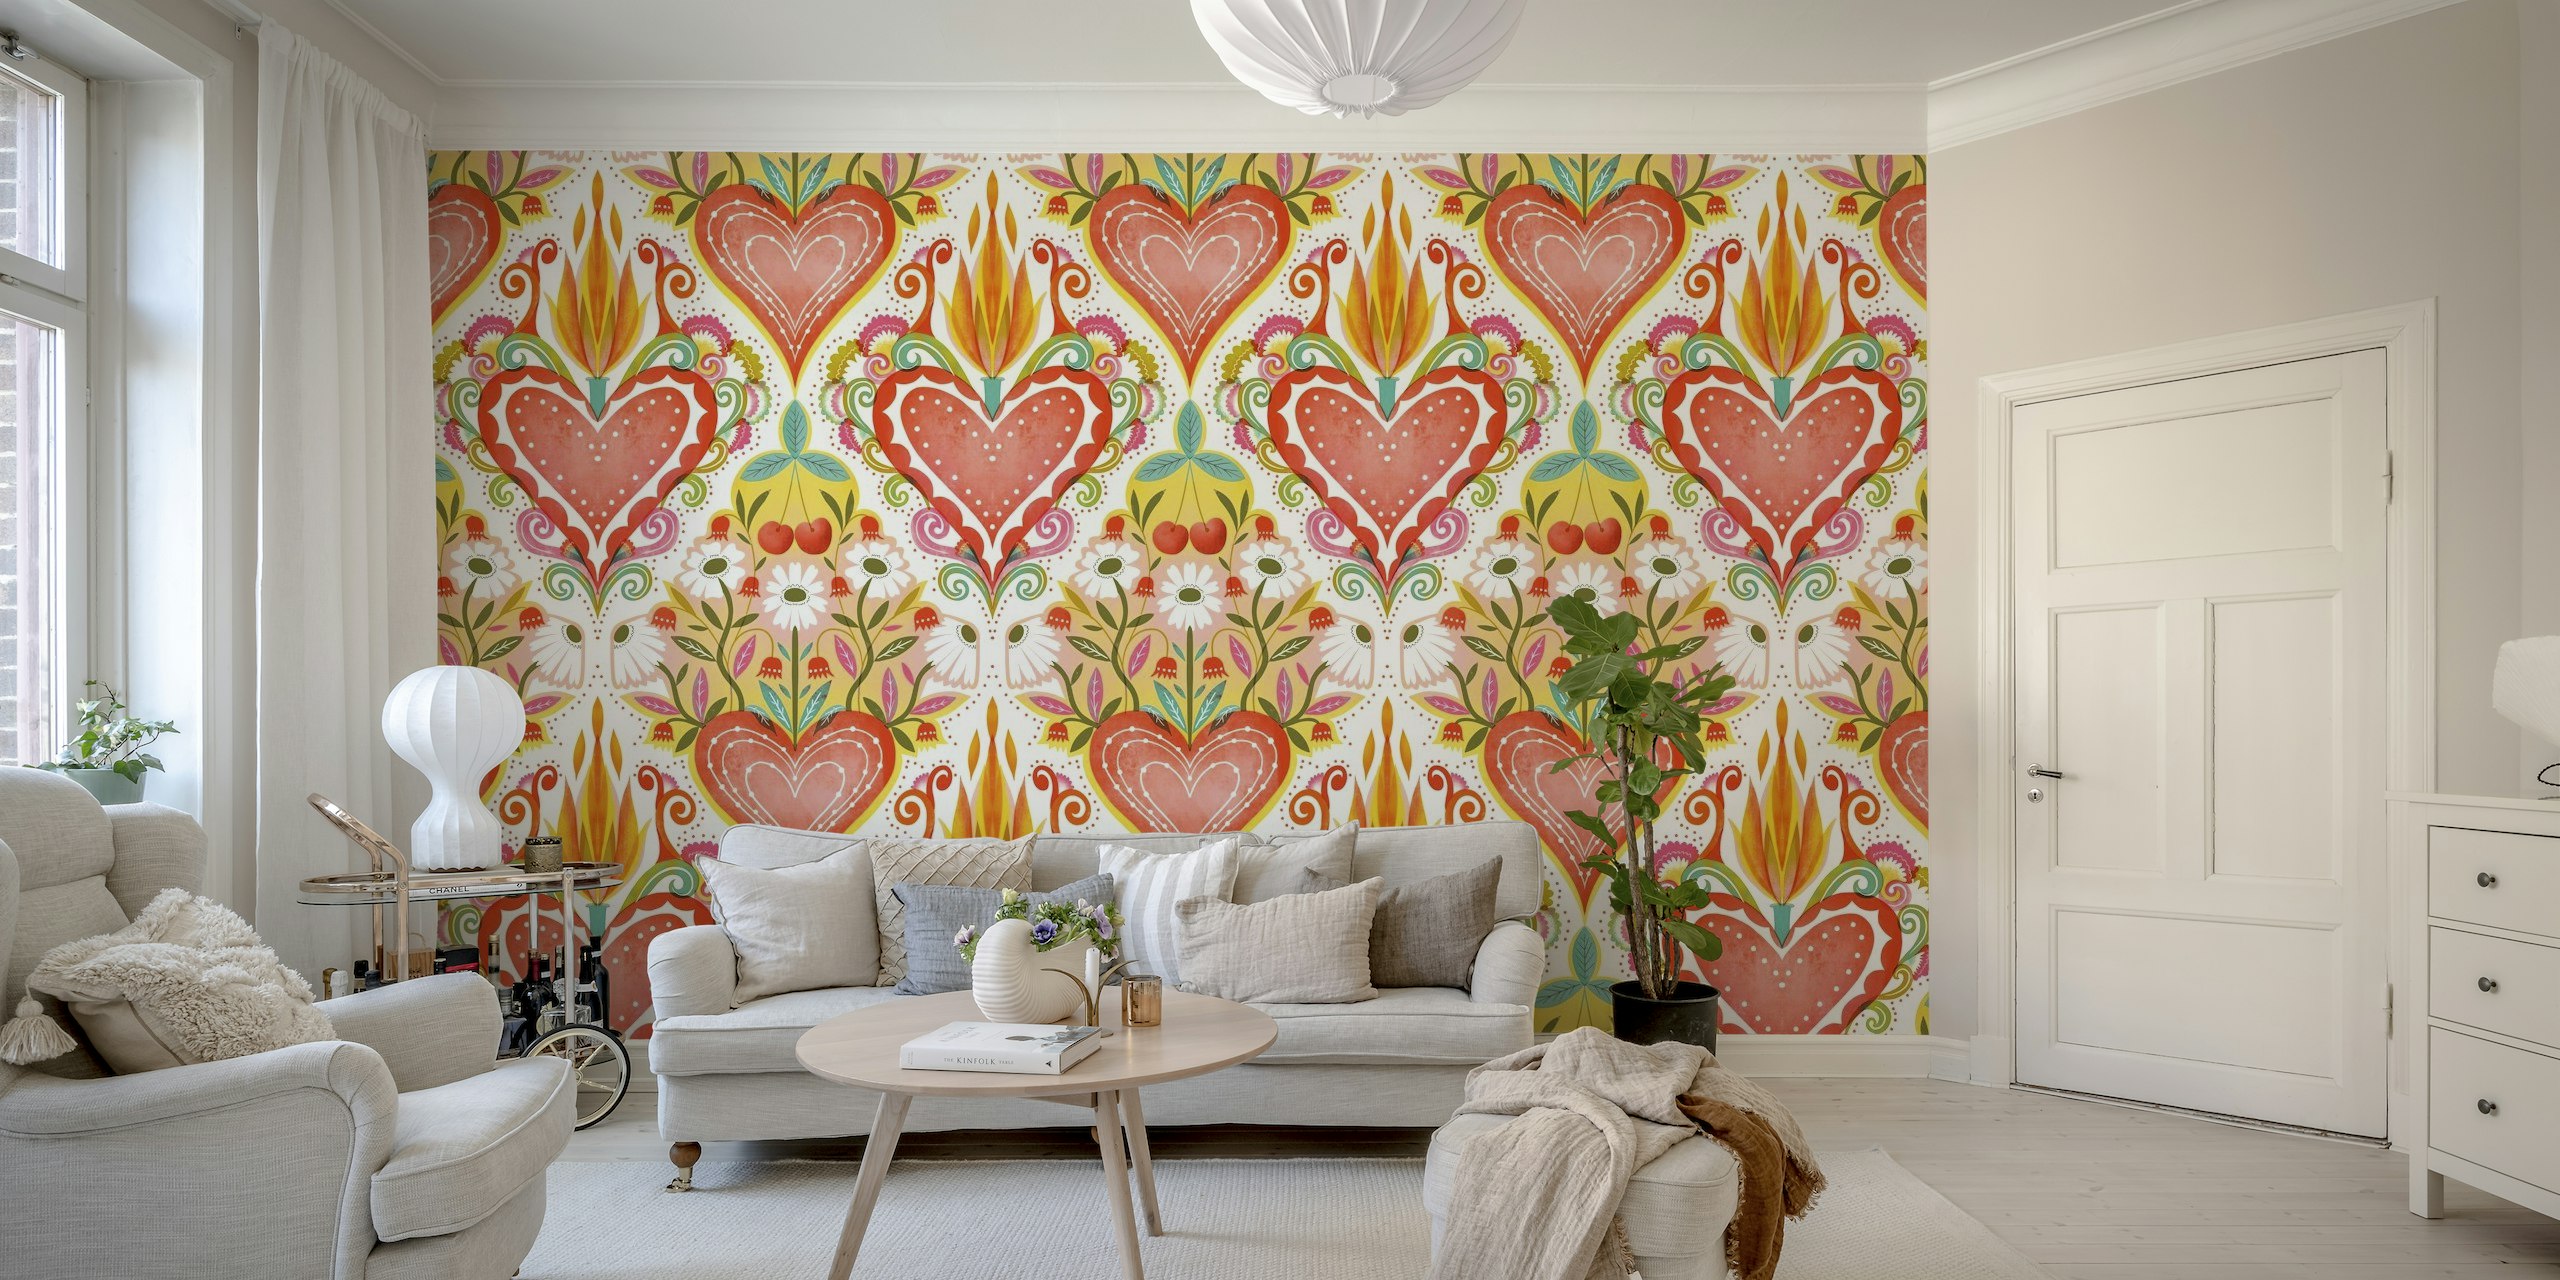 Colorato murale di ispirazione popolare caratterizzato da un grande cuore centrale con fiamme e cuori circostanti più piccoli e motivi floreali.